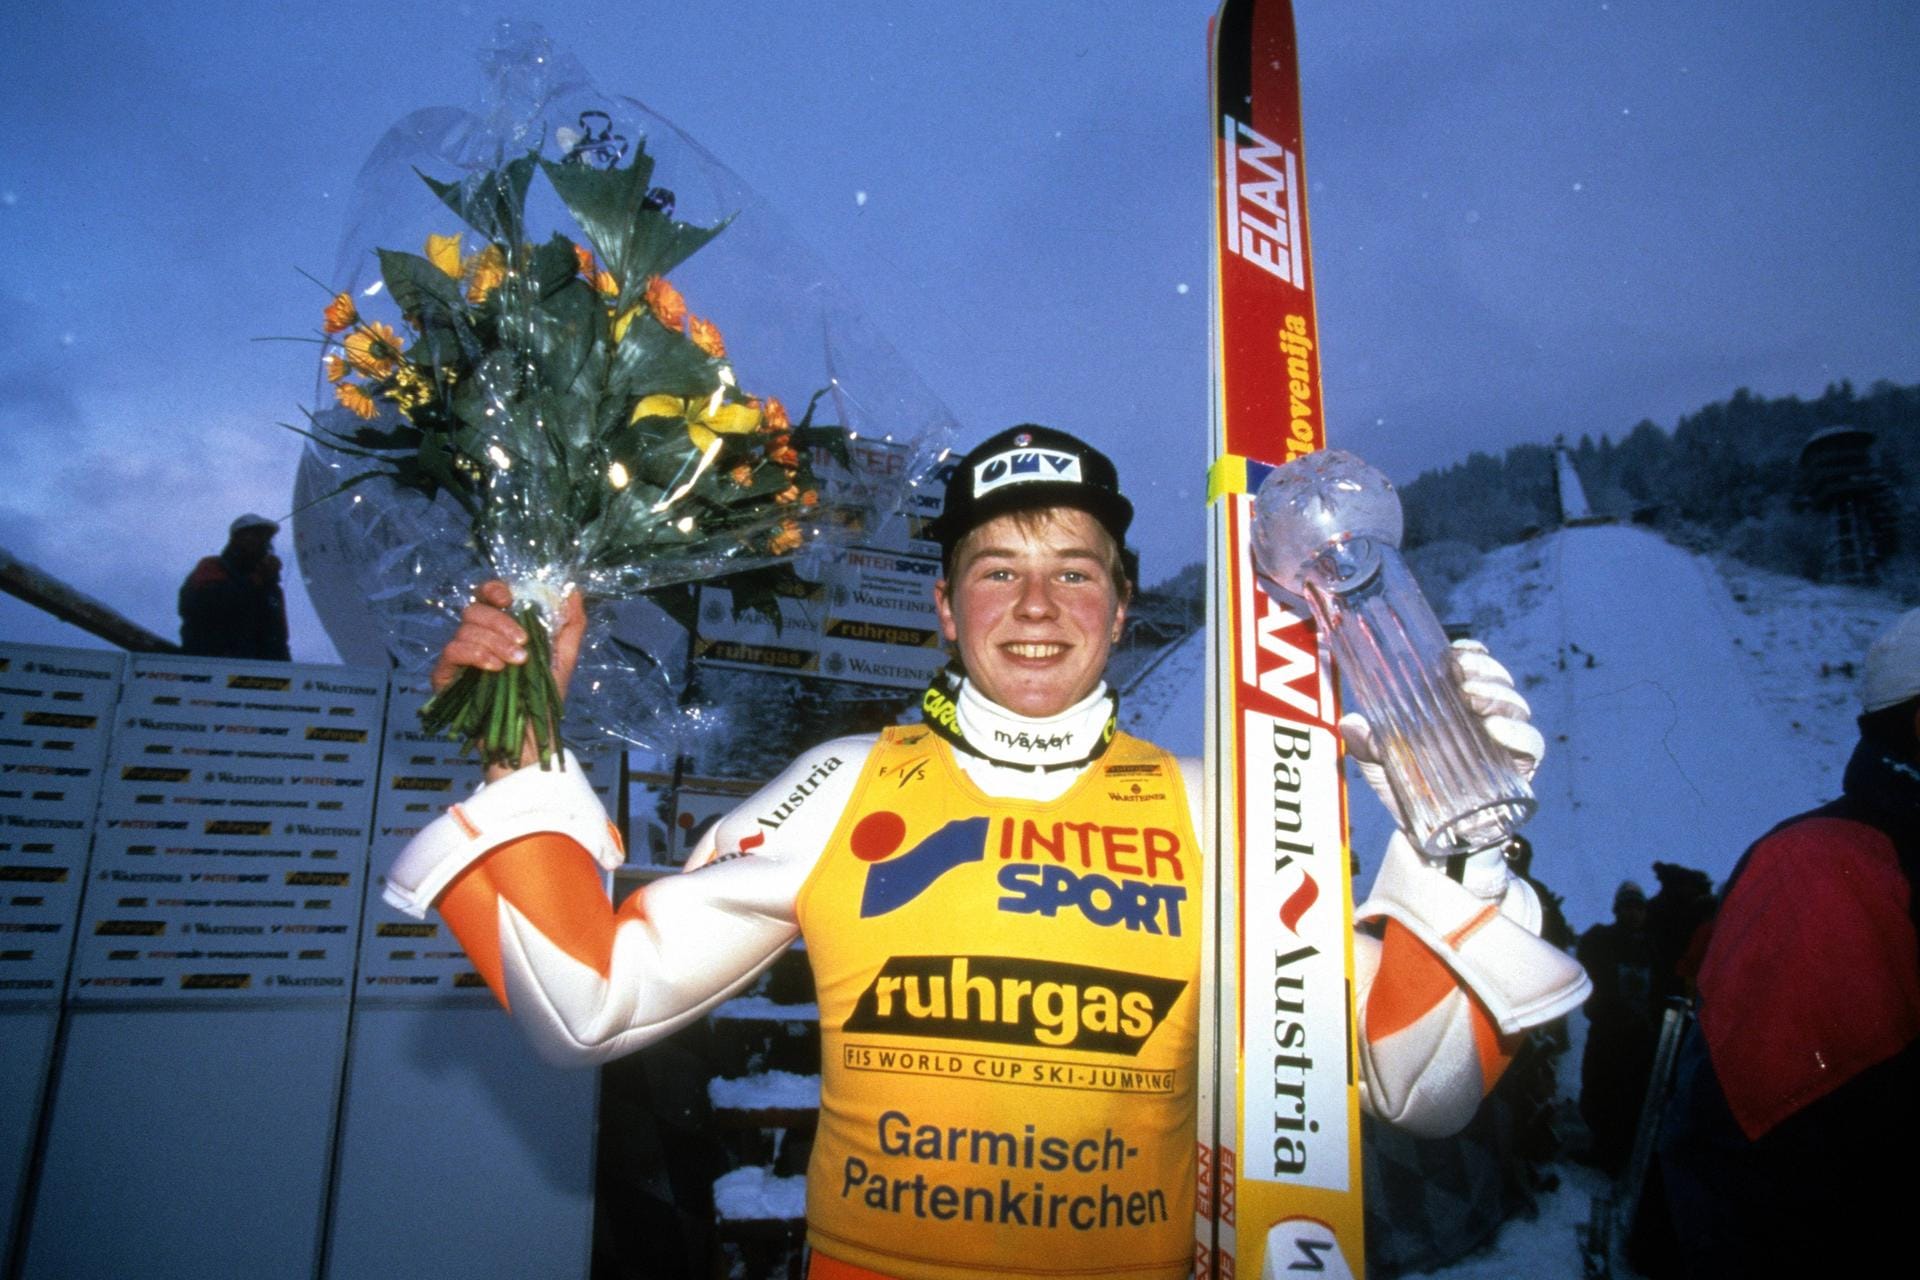 Andreas Goldberger: In den 90ern hatte "Goldi" seine großen Jahre, holte 1992/93 und 1994/95 den Tournee-Gesamtsieg, gewann drei Mal den Gesamtweltcup und zwei Olympische Bronzemedaillen. Der Oberösterreicher war schon als Aktiver ein Entertainer, daran hat sich nichts geändert.